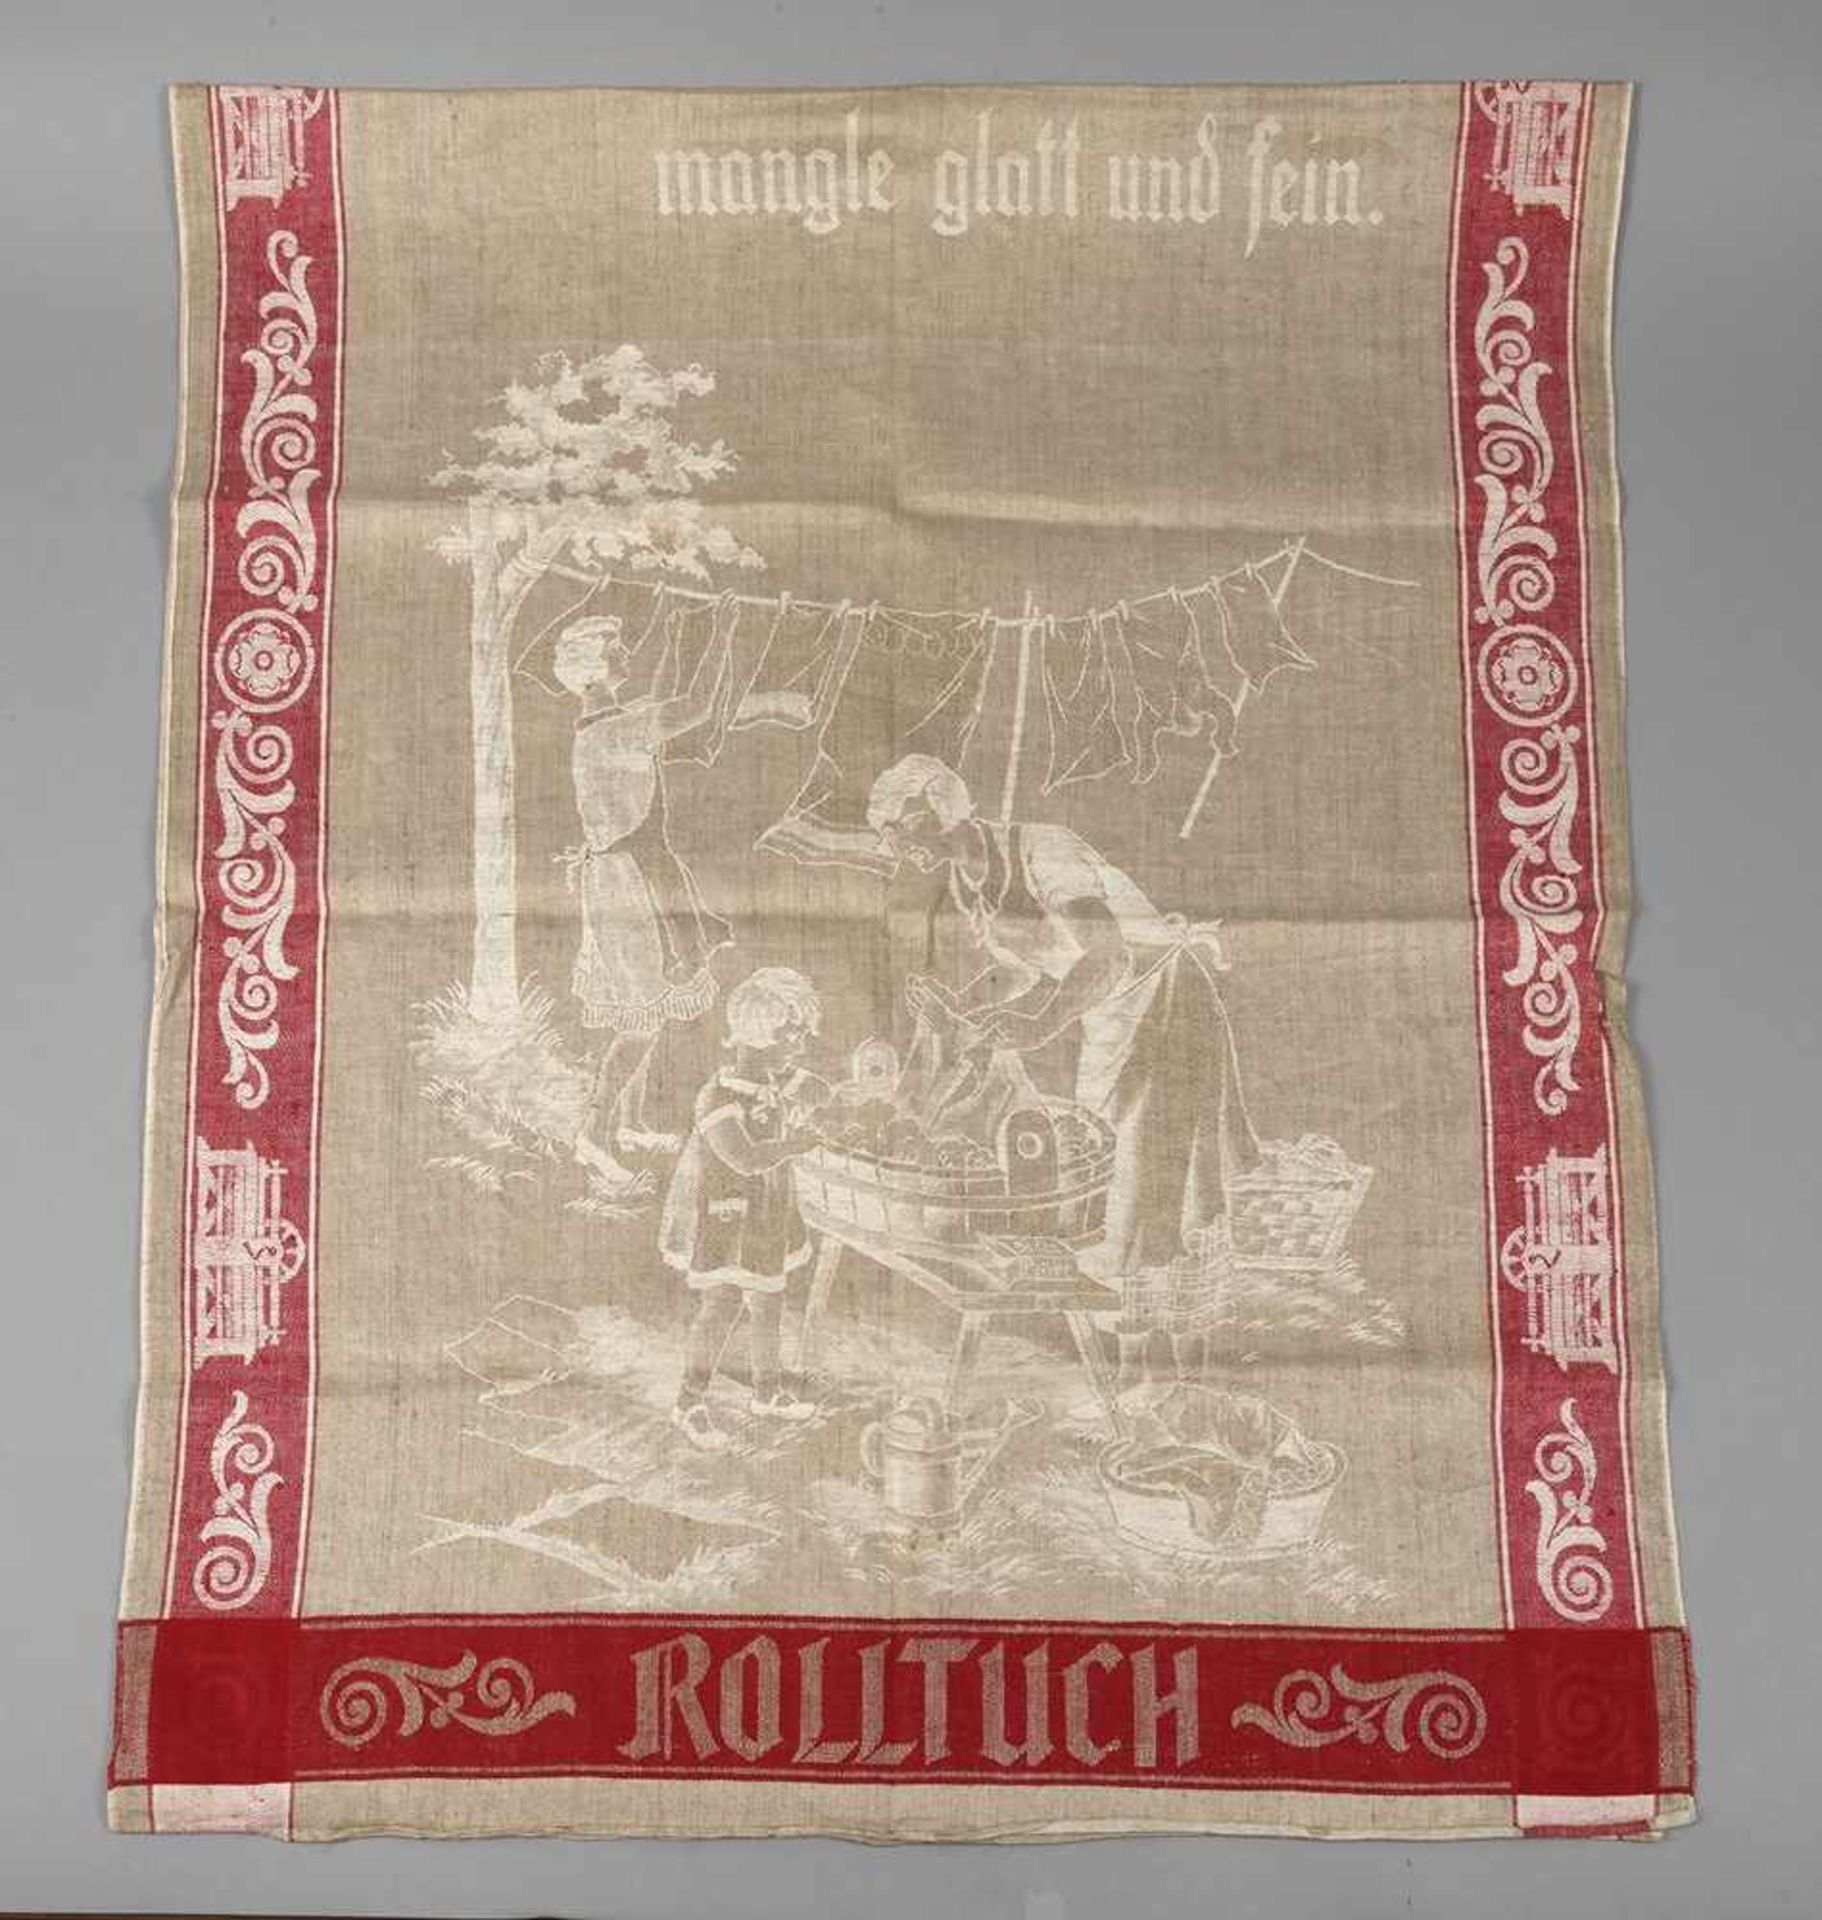 Rolltuchum 1920, naturfarbener Leinen mit eingewebten roten Fäden, Umschrift „Willst du eigen sein